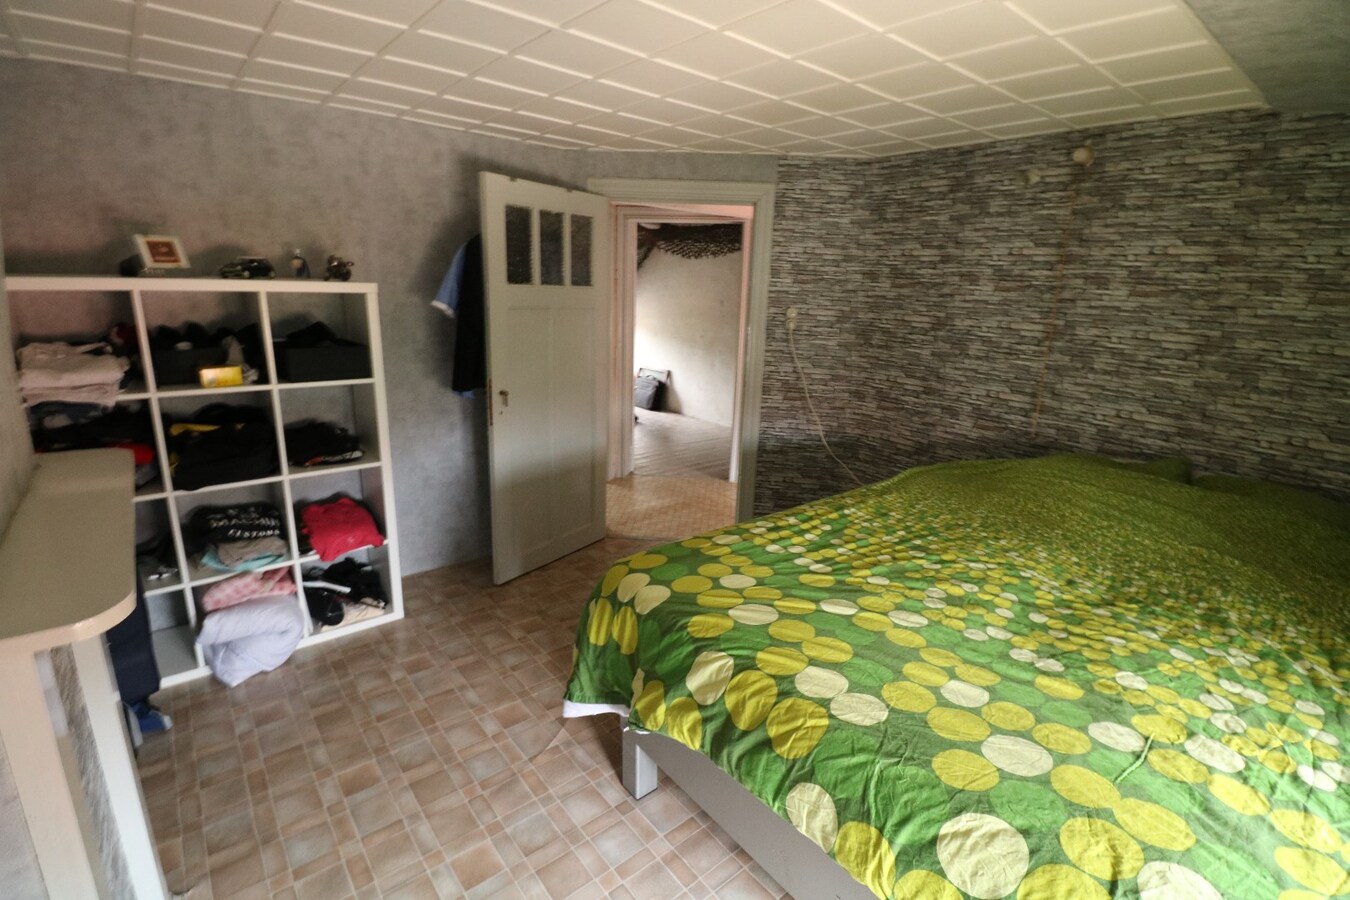 Woning met 3 slaapkamers en garage in rustige straat te Koekelare 